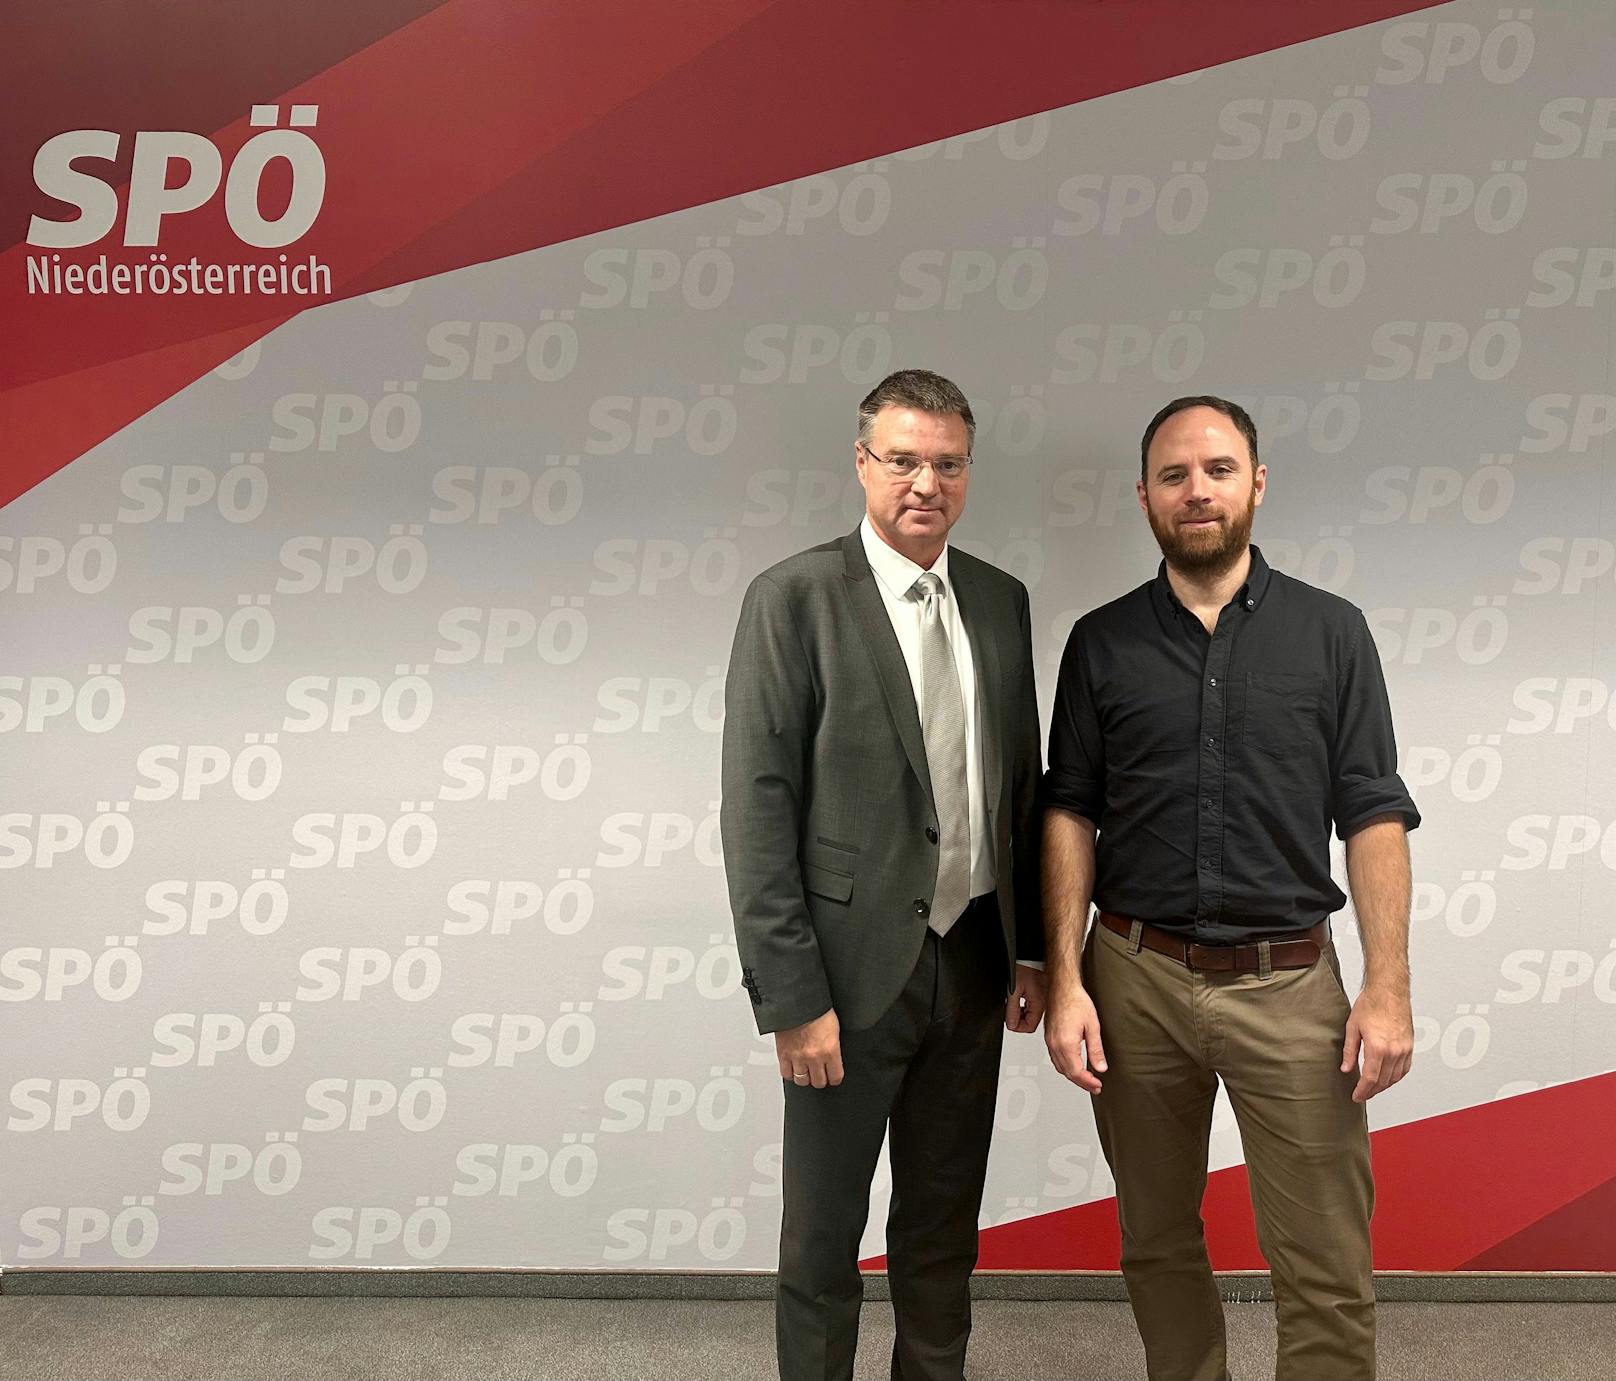 Pressekonferenz mit den beiden SPÖ NÖ Landesgeschäftsführern Bgm. Wolfgang Kocevar und Klaus Seltenheim zum Thema „Fairness für Niederösterreich"